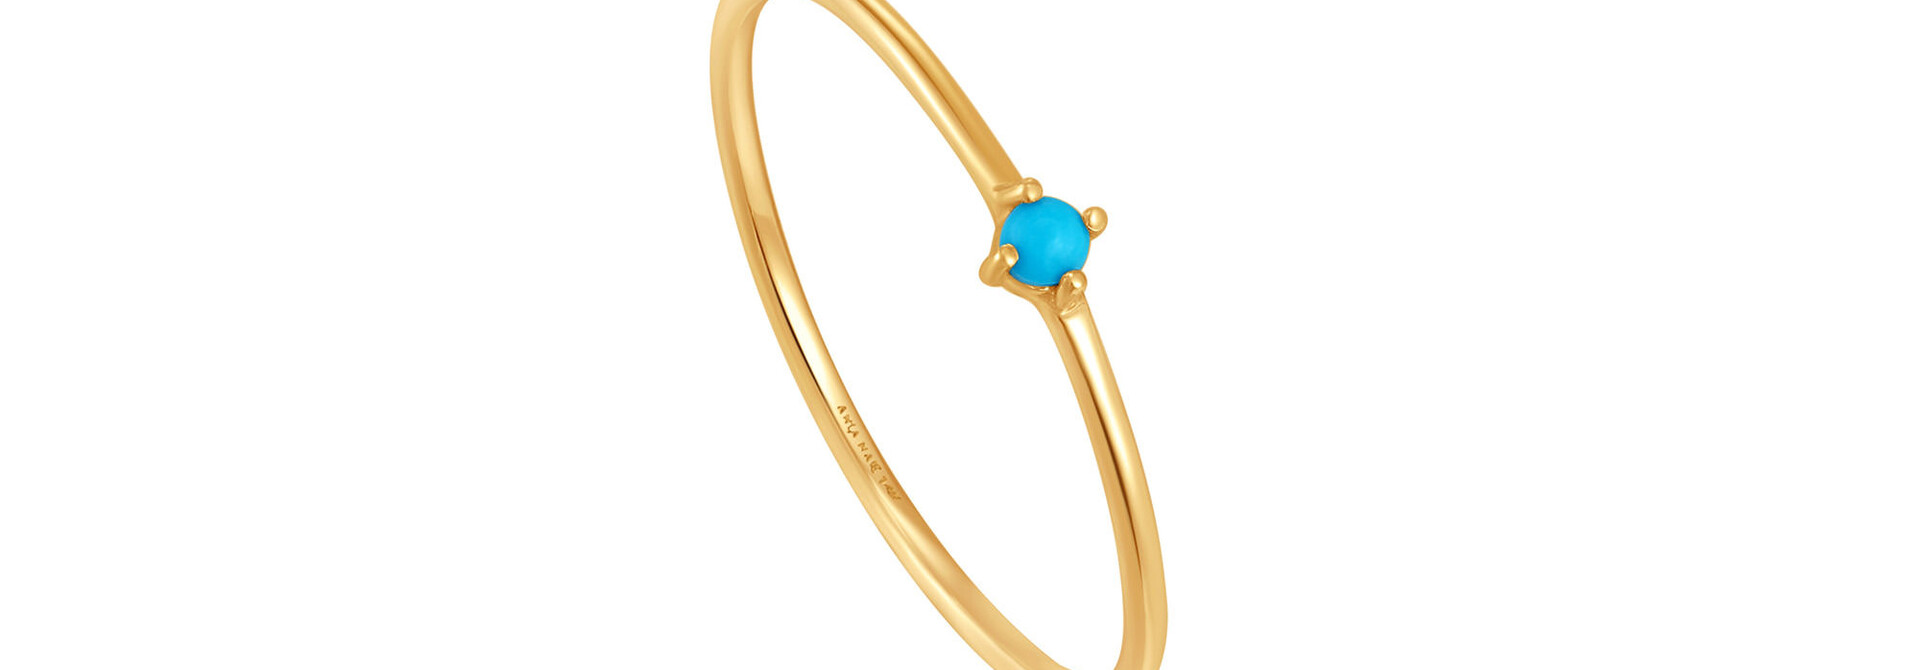 Turquoise stone ring - 14 karaat goud